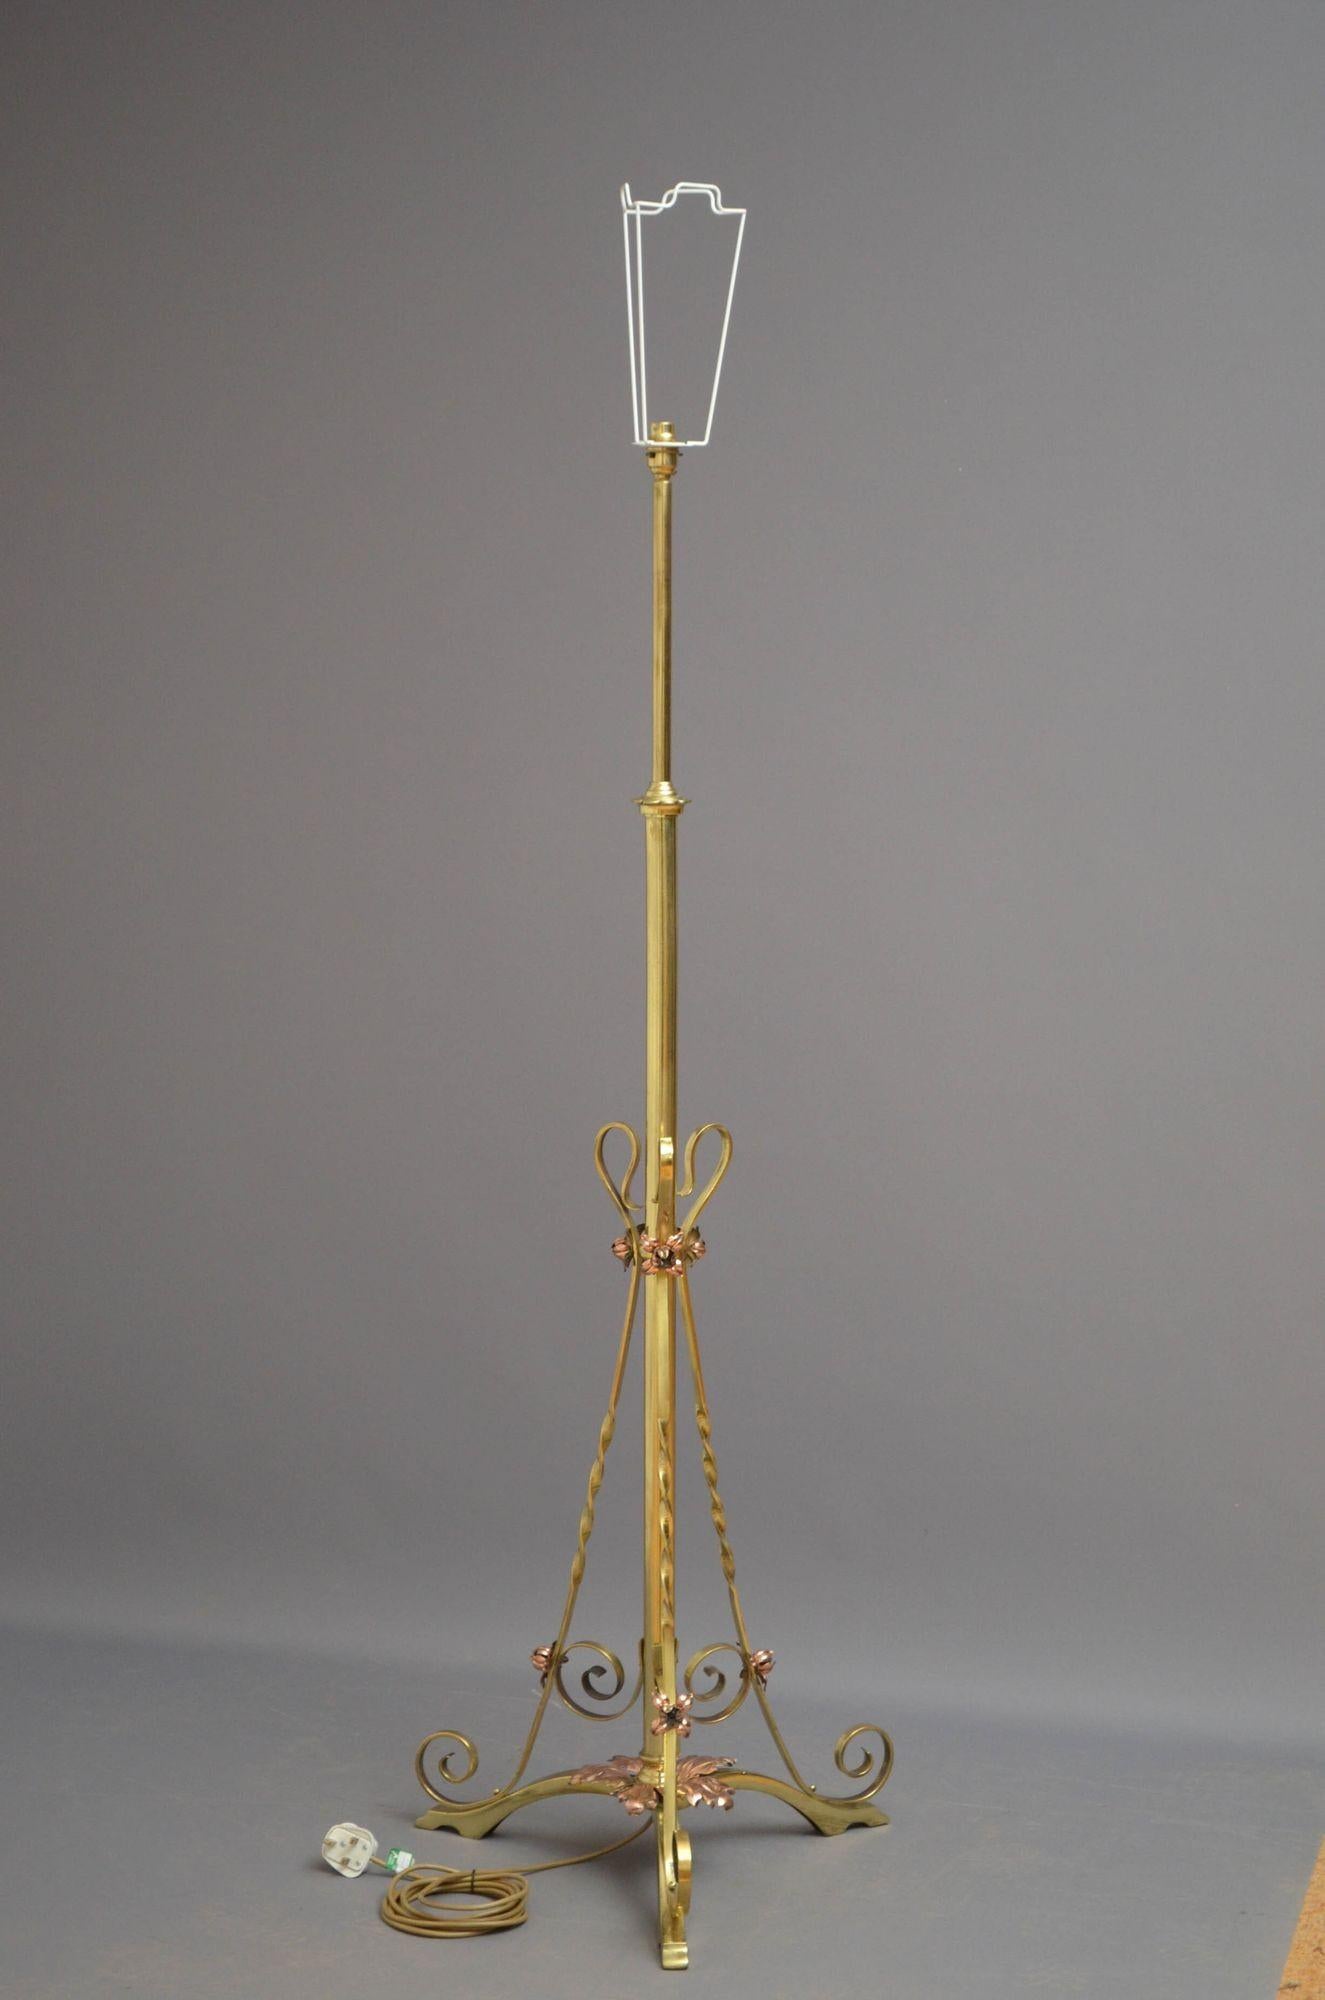 Sn5179 Elégant lampadaire Art Nouveau en laiton et cuivre, réglable en hauteur, avec trois supports et volutes torsadés et trois pieds, décorés de motifs de feuilles de cuivre. Cette lampe ancienne a été testée par PAT et est prête à être utilisée.